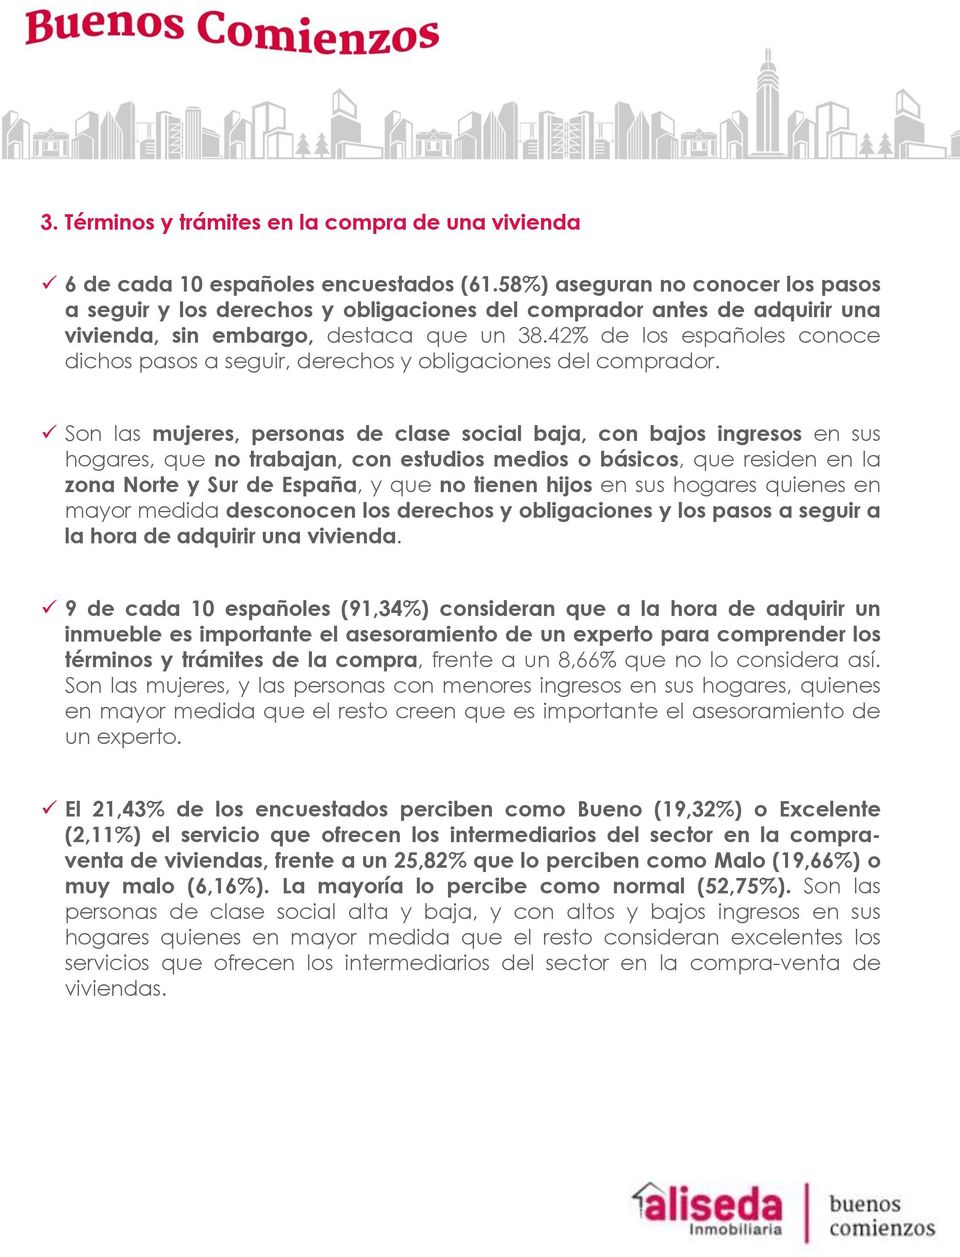 42% de los españoles conoce dichos pasos a seguir, derechos y obligaciones del comprador.